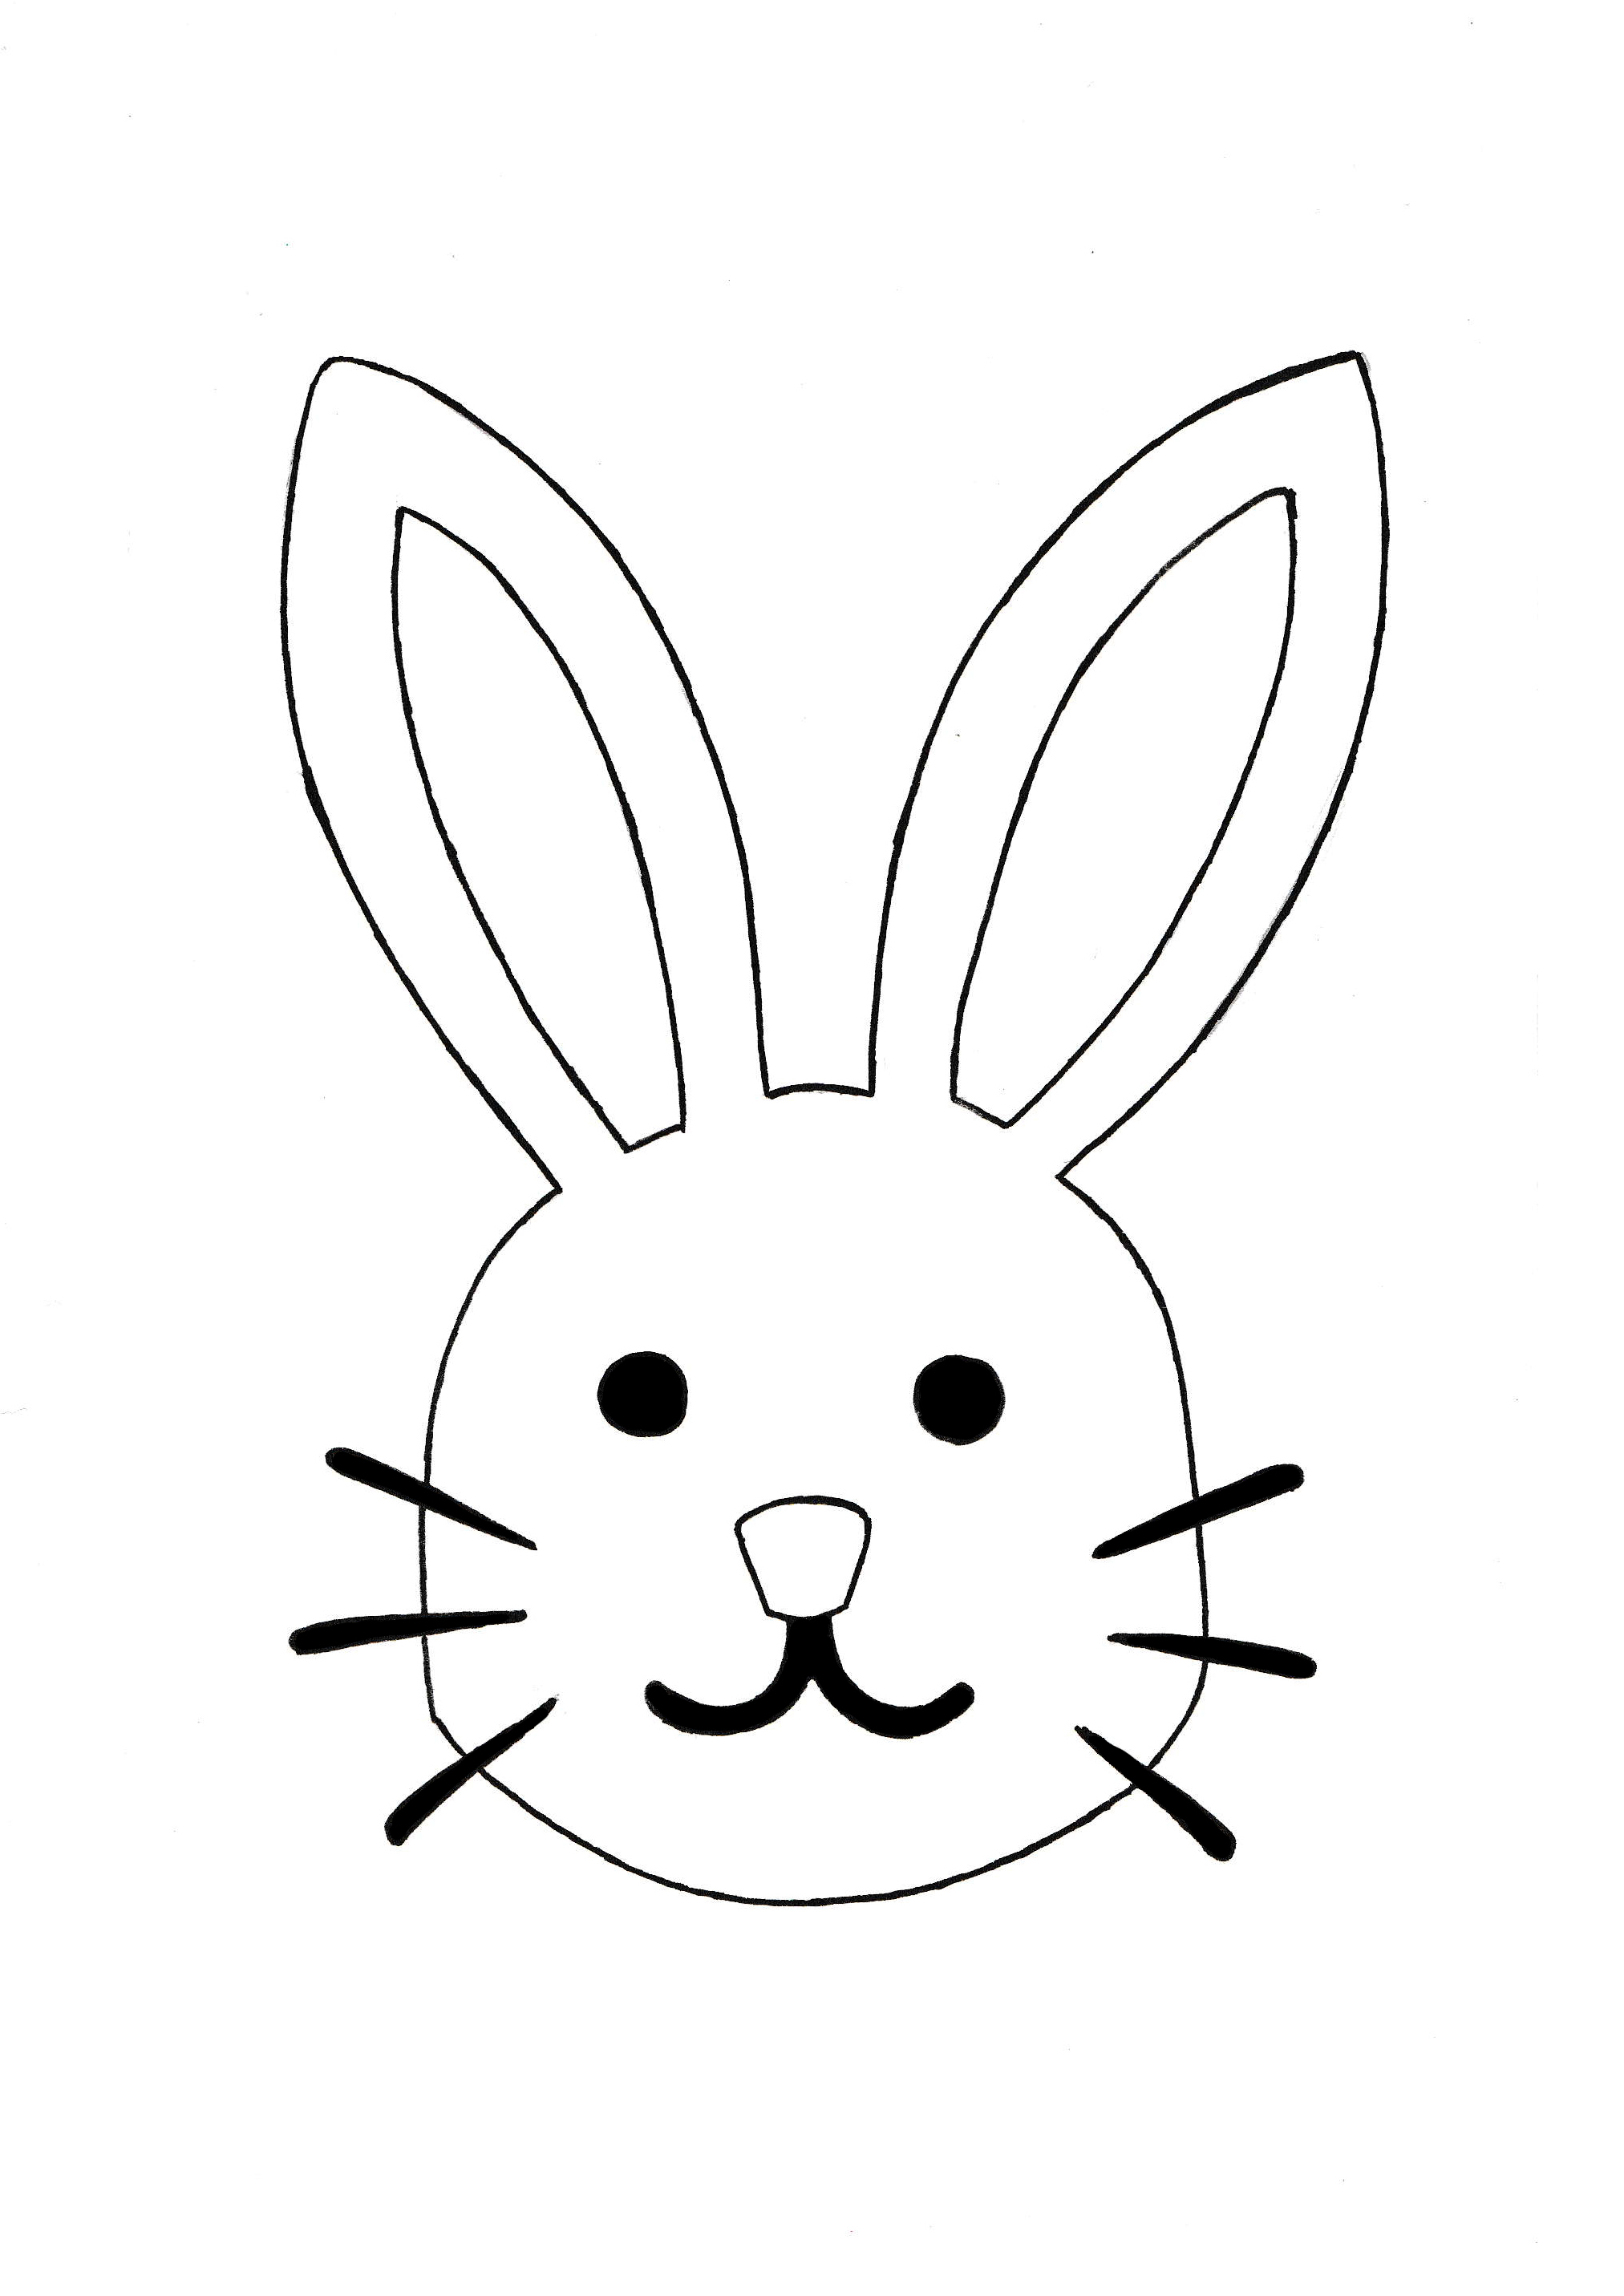 bunny-template-free-printable